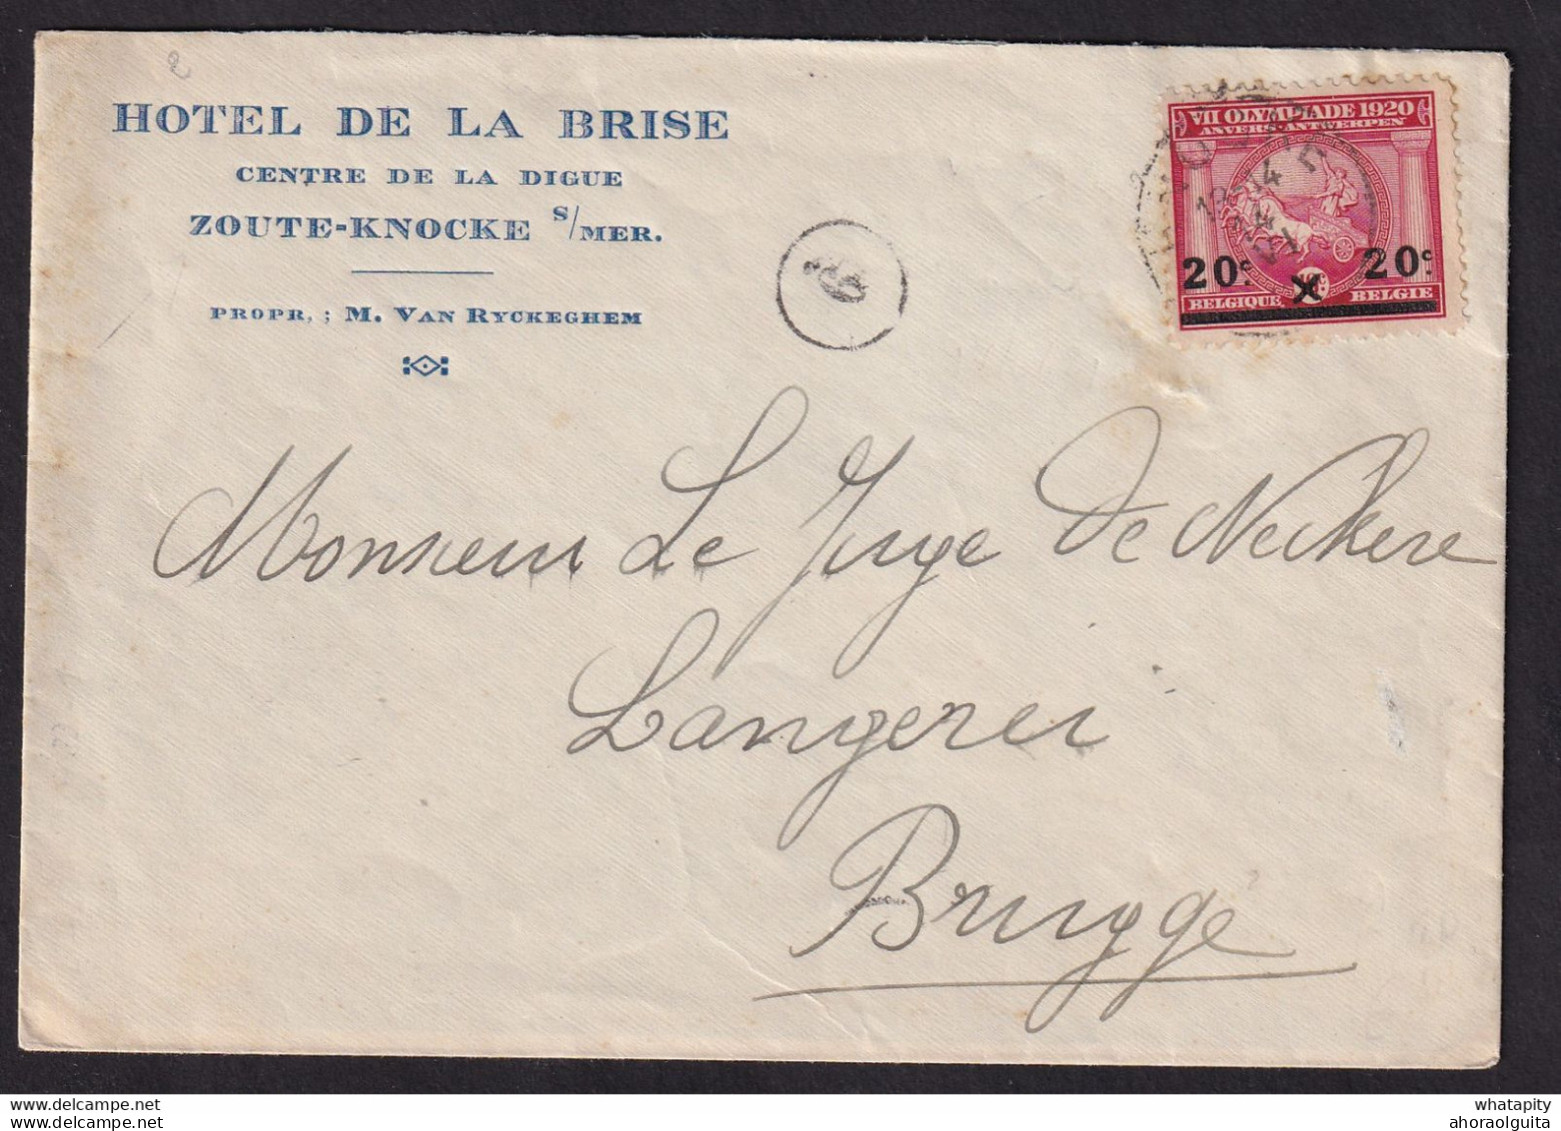 DDBB 577 - Enveloppe Illustrée TP Jeux Olympiques KNOKKE 1921 Vers BRUGGE - Entete Et Gravure Hotel De La Brise, Digue - Summer 1920: Antwerp